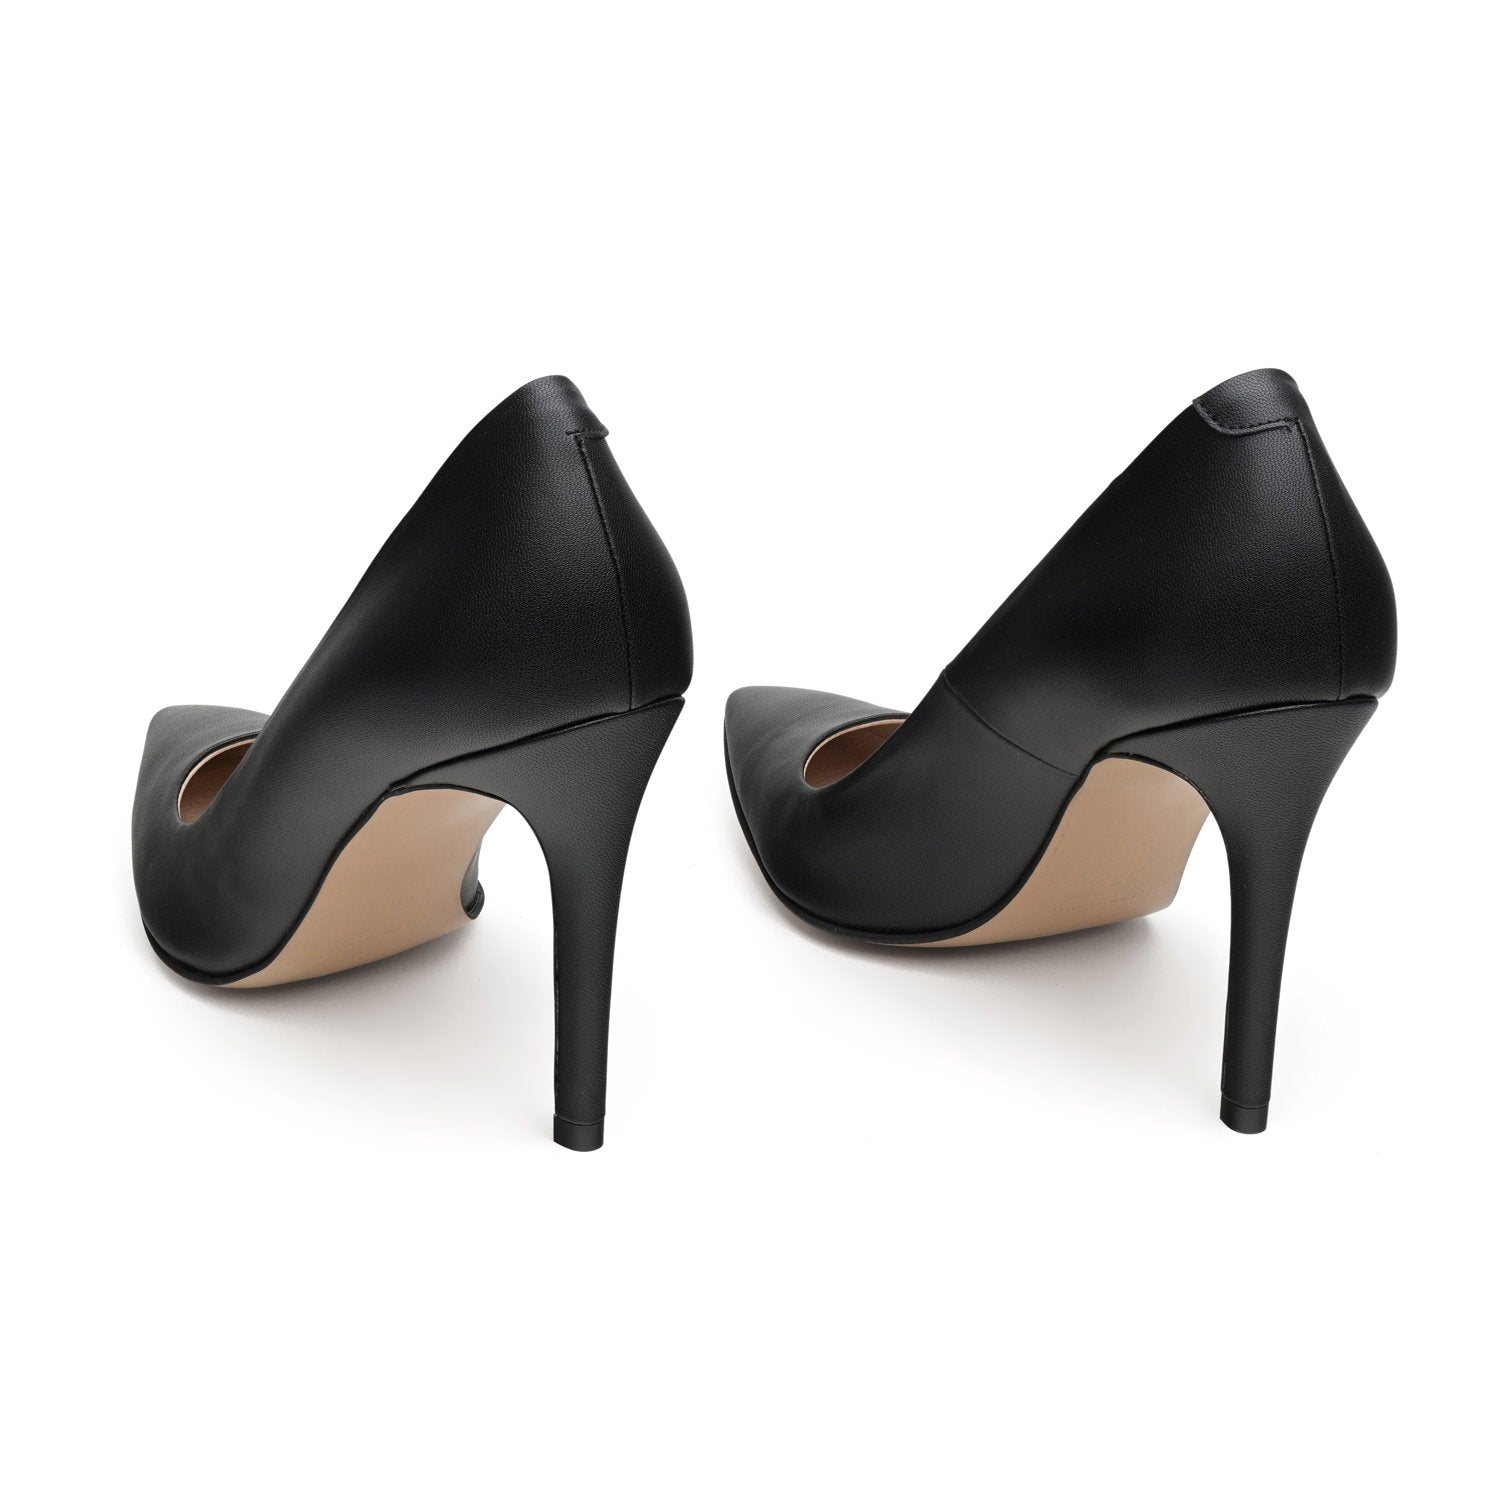 The Black - vegan 100mm heels